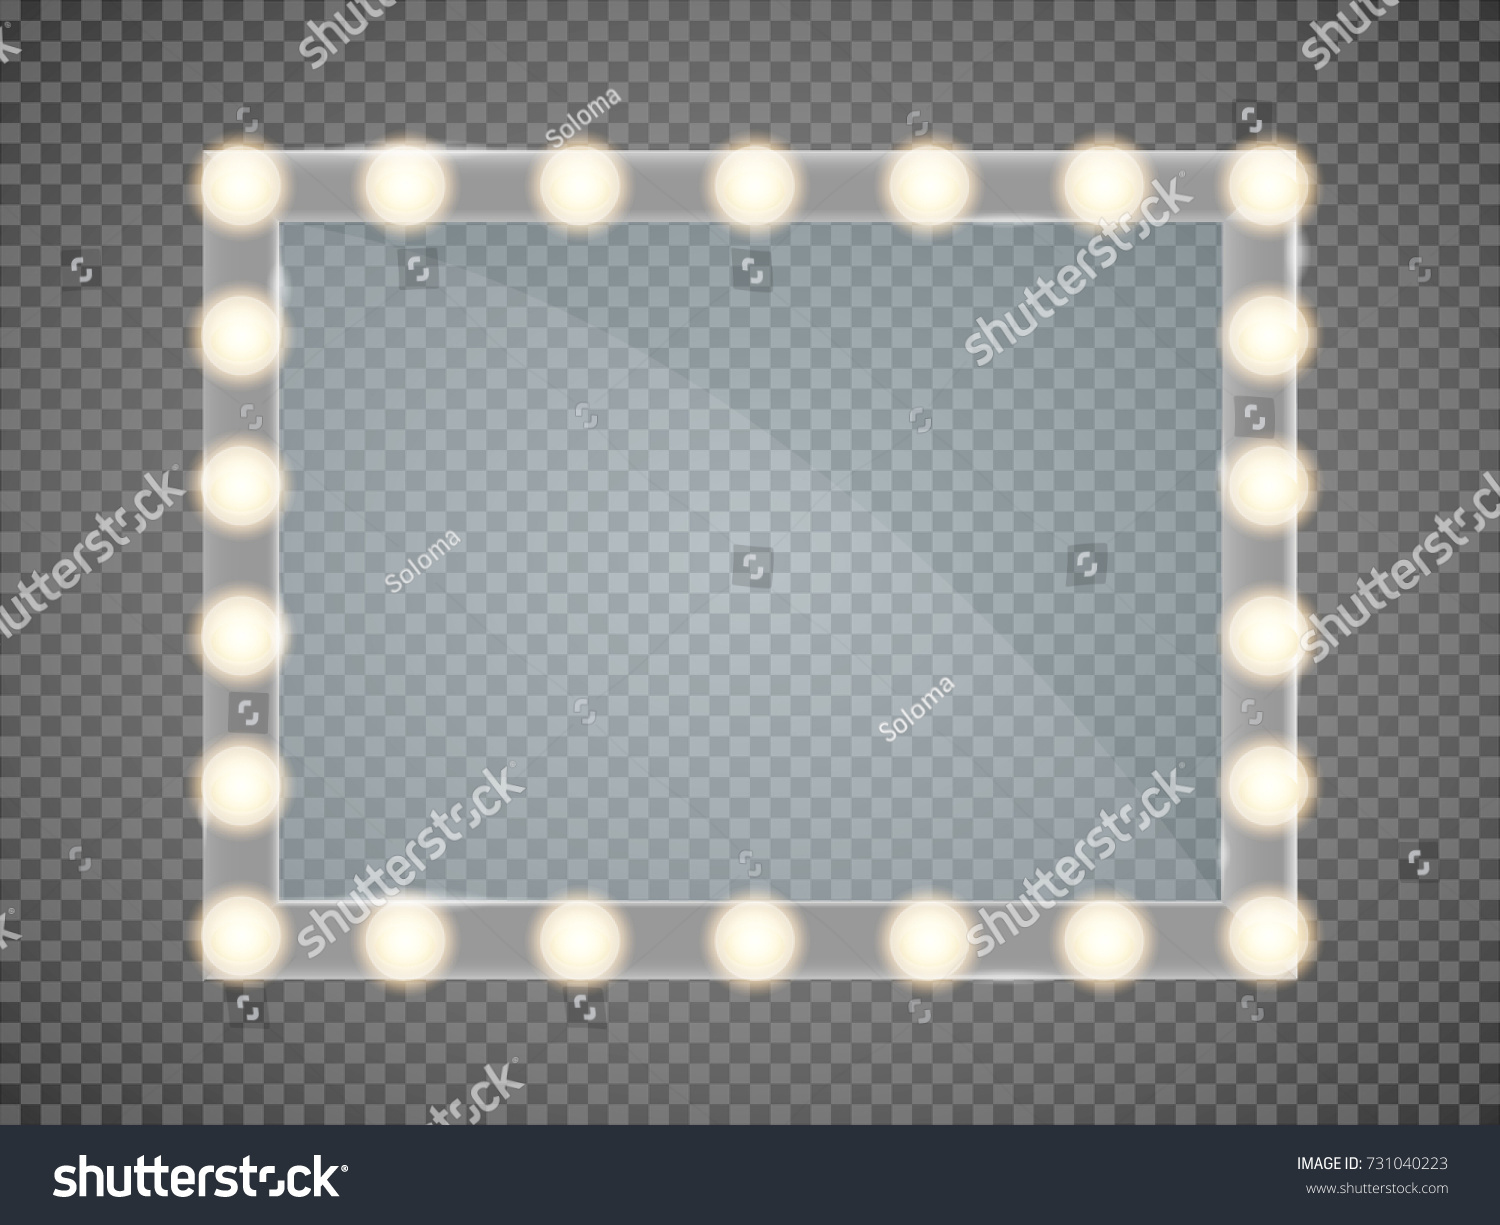 SVG of Mirror in frame with light makeup lights for changing room or backroom, on transparent background vector illustration svg